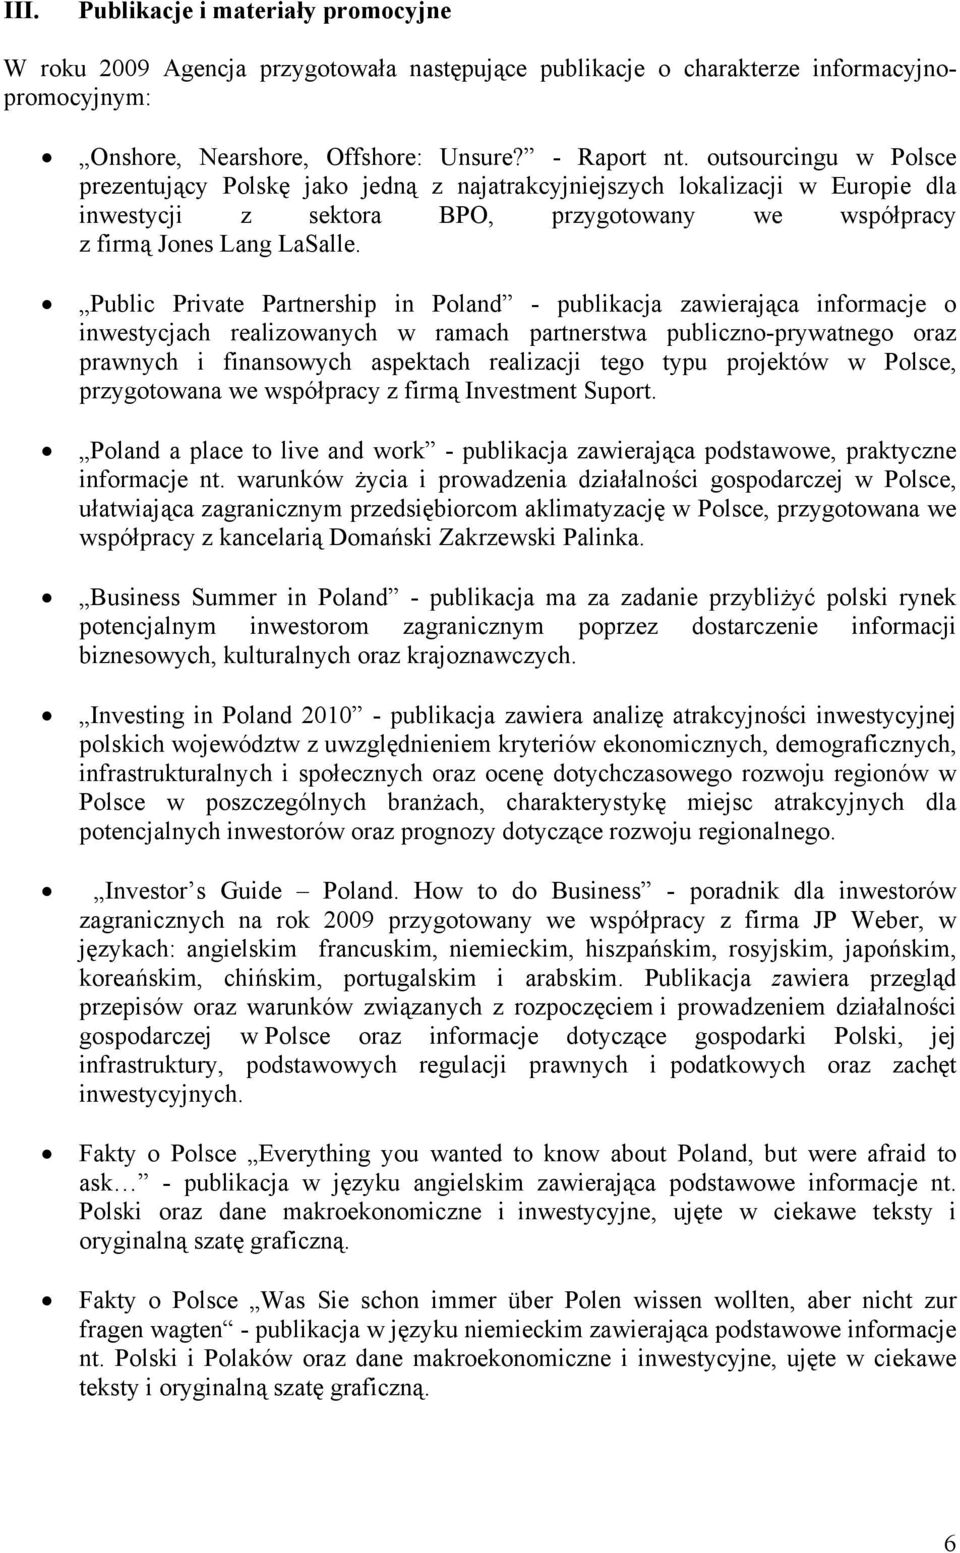 Public Private Partnership in Poland - publikacja zawierająca informacje o inwestycjach realizowanych w ramach partnerstwa publiczno-prywatnego oraz prawnych i finansowych aspektach realizacji tego